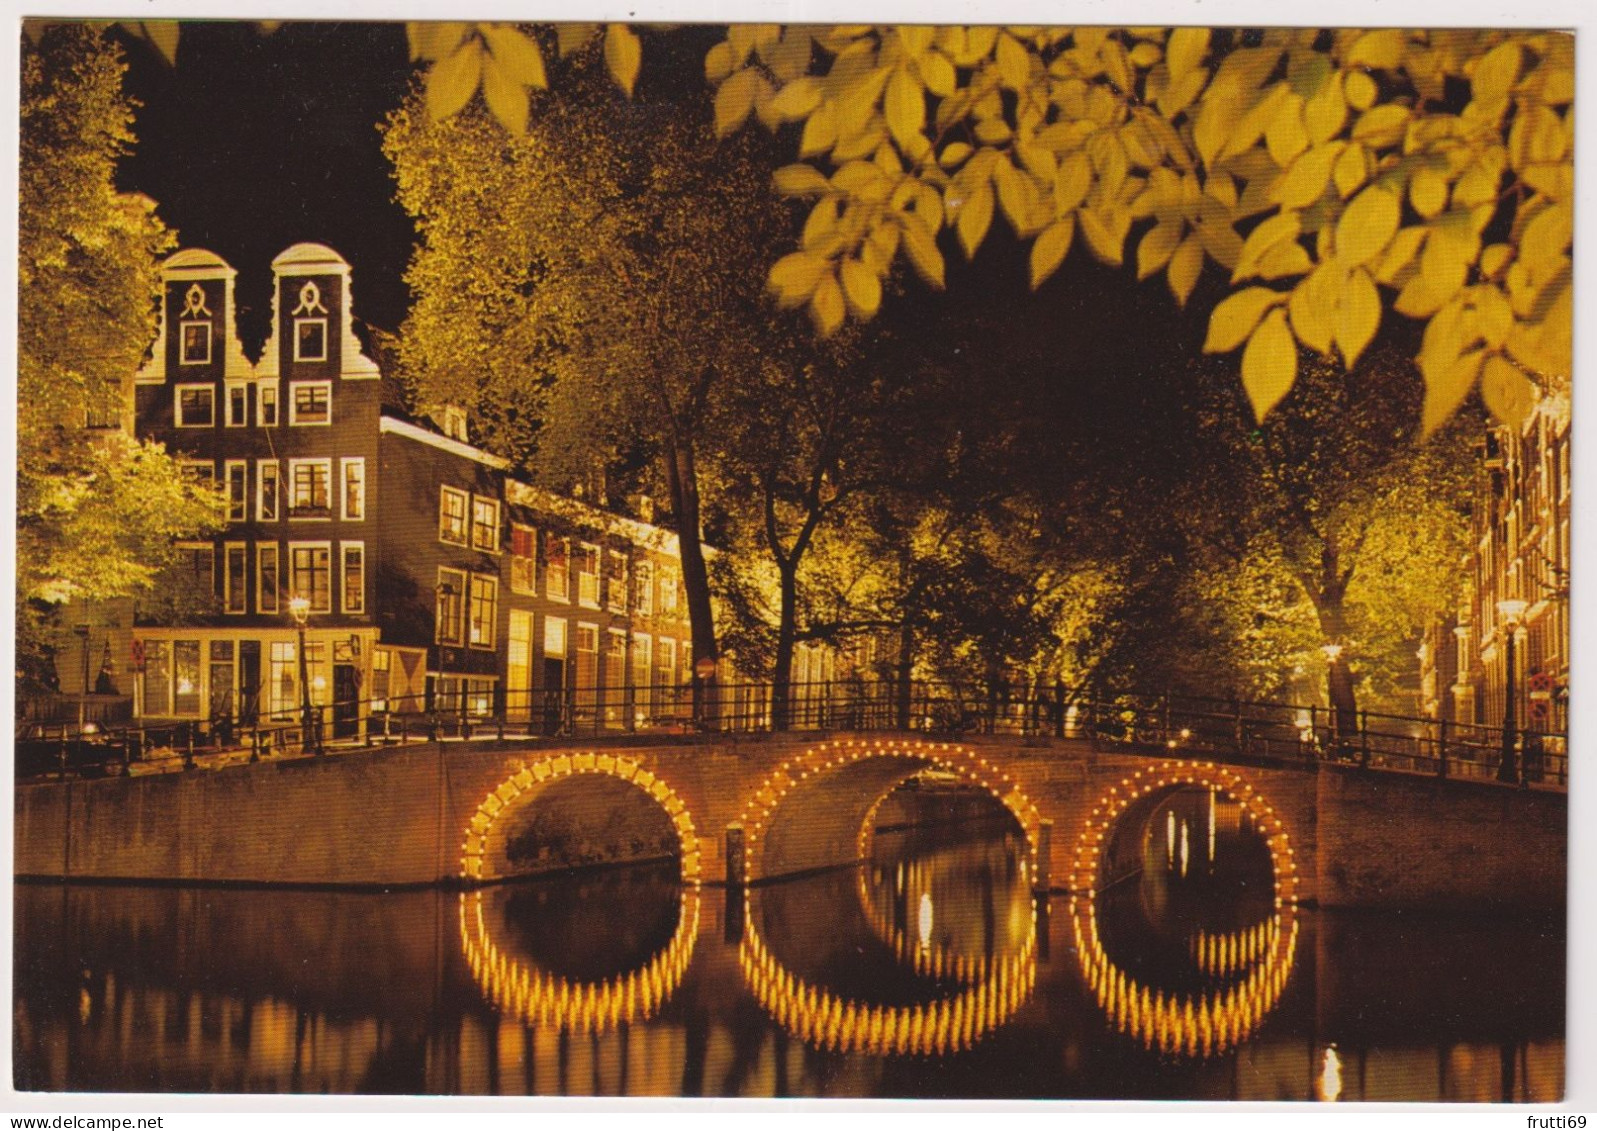 A 204583 NETHERLANDS - Amsterdam - Herengracht - Amsterdam